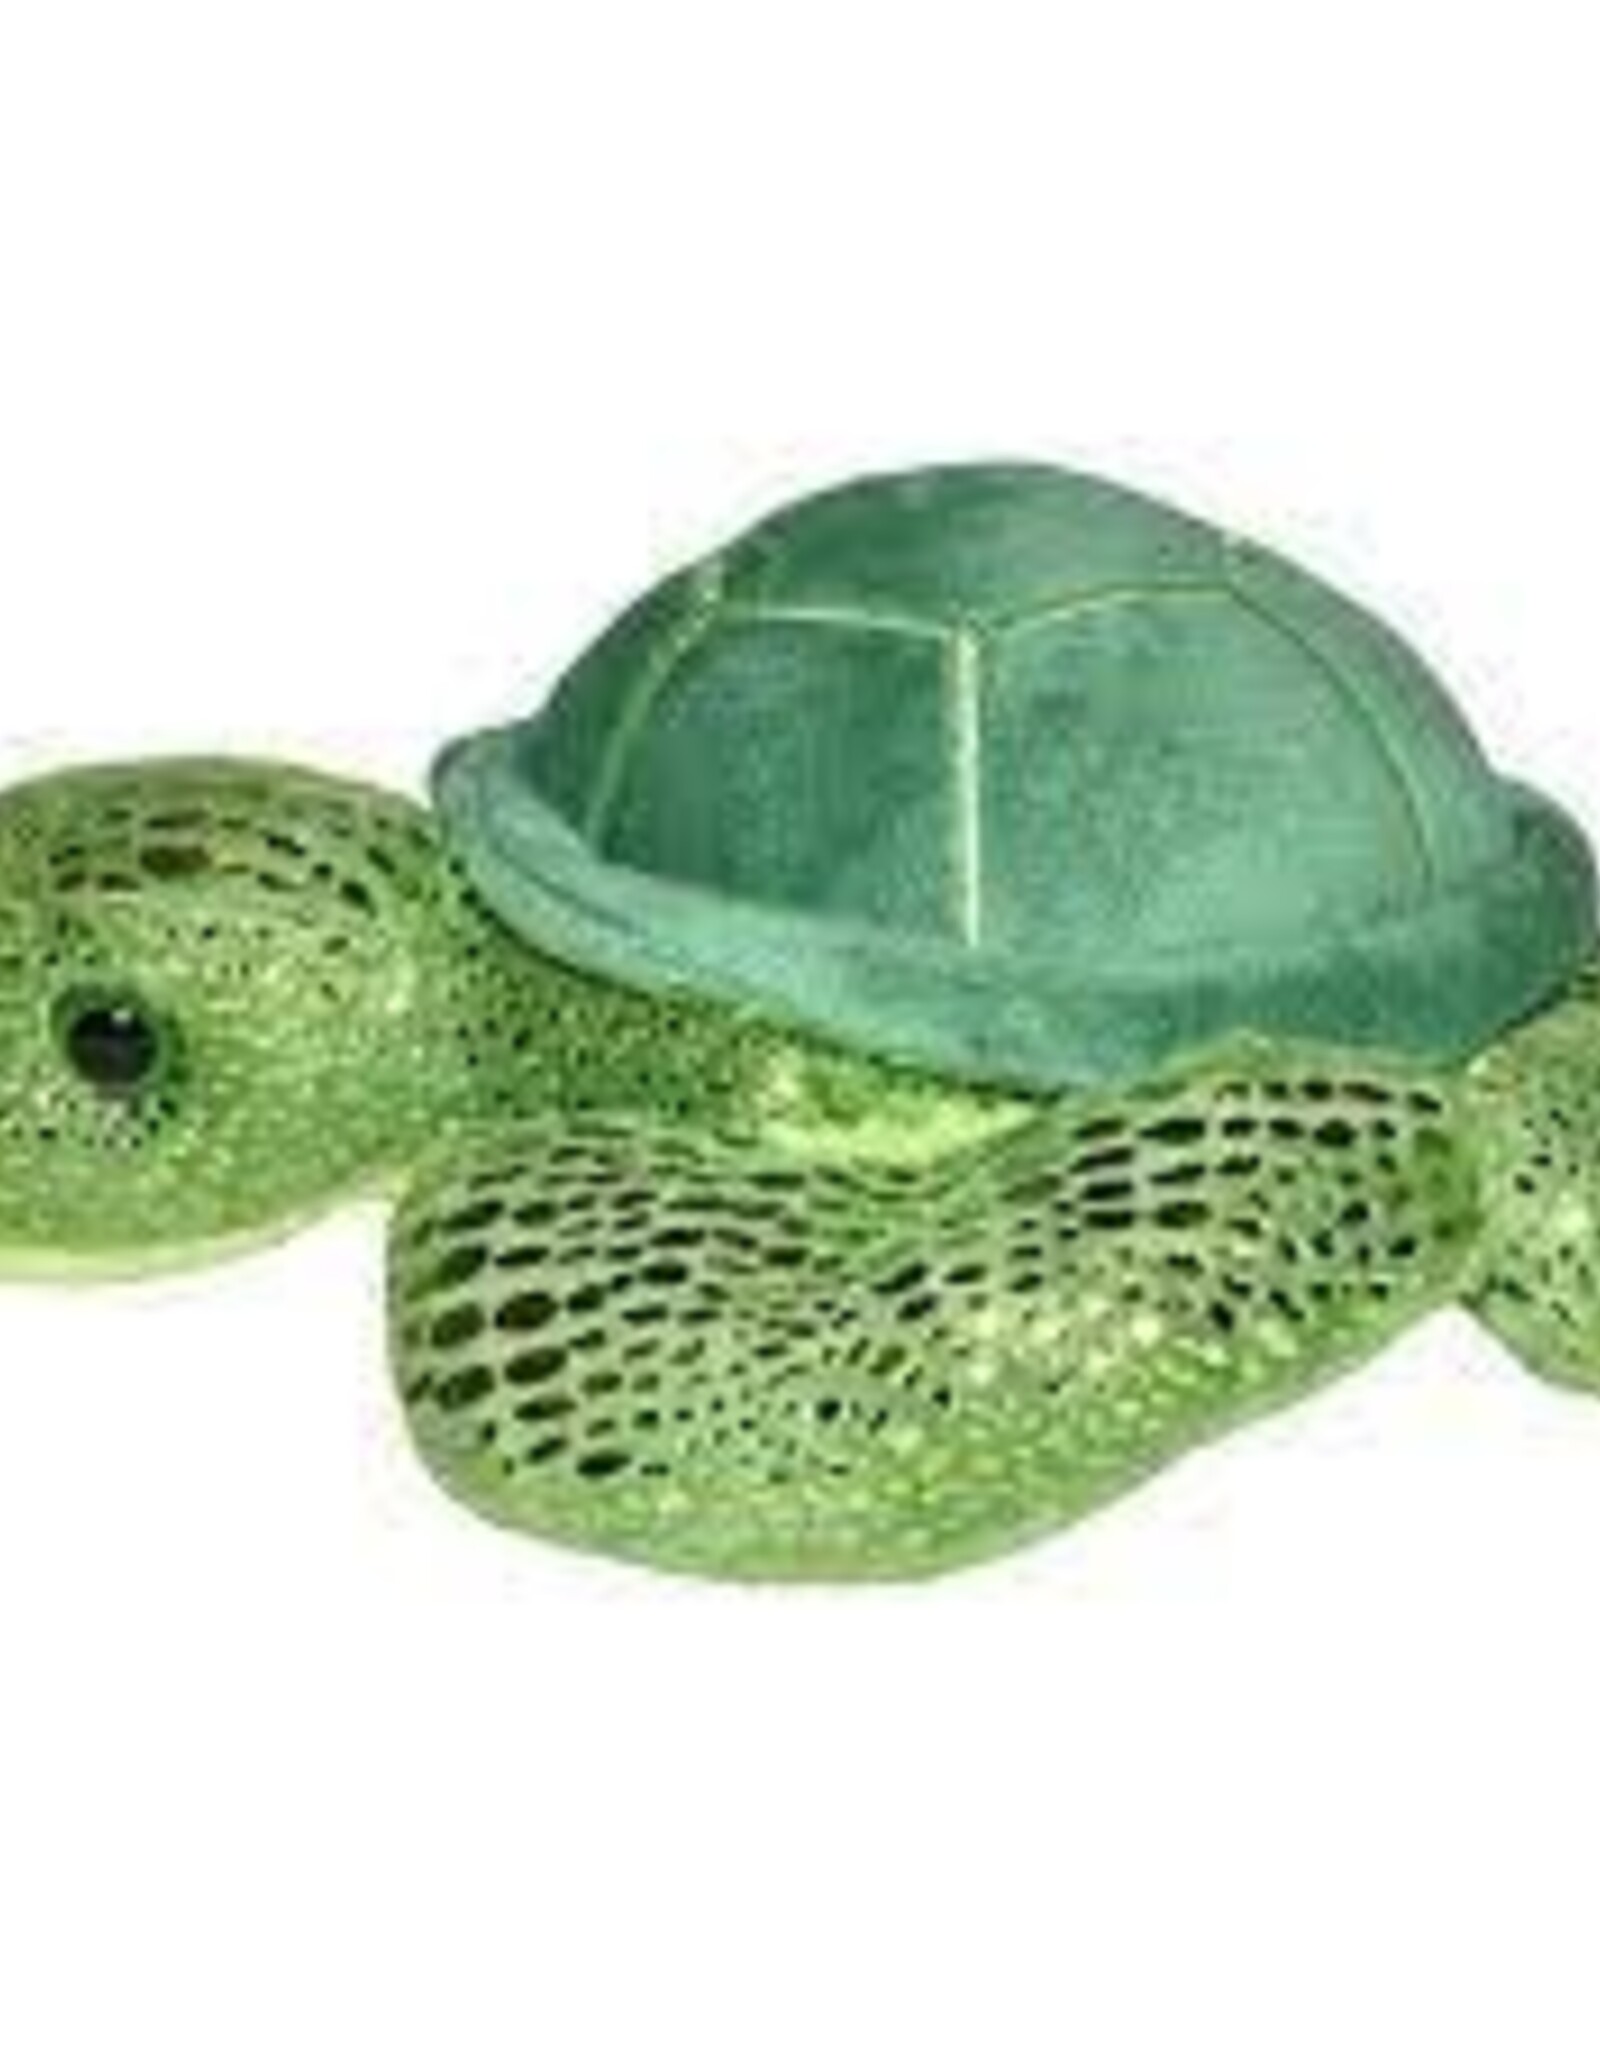 WILD REPUBLIC Sea Turtle Stuffed Animal 7"